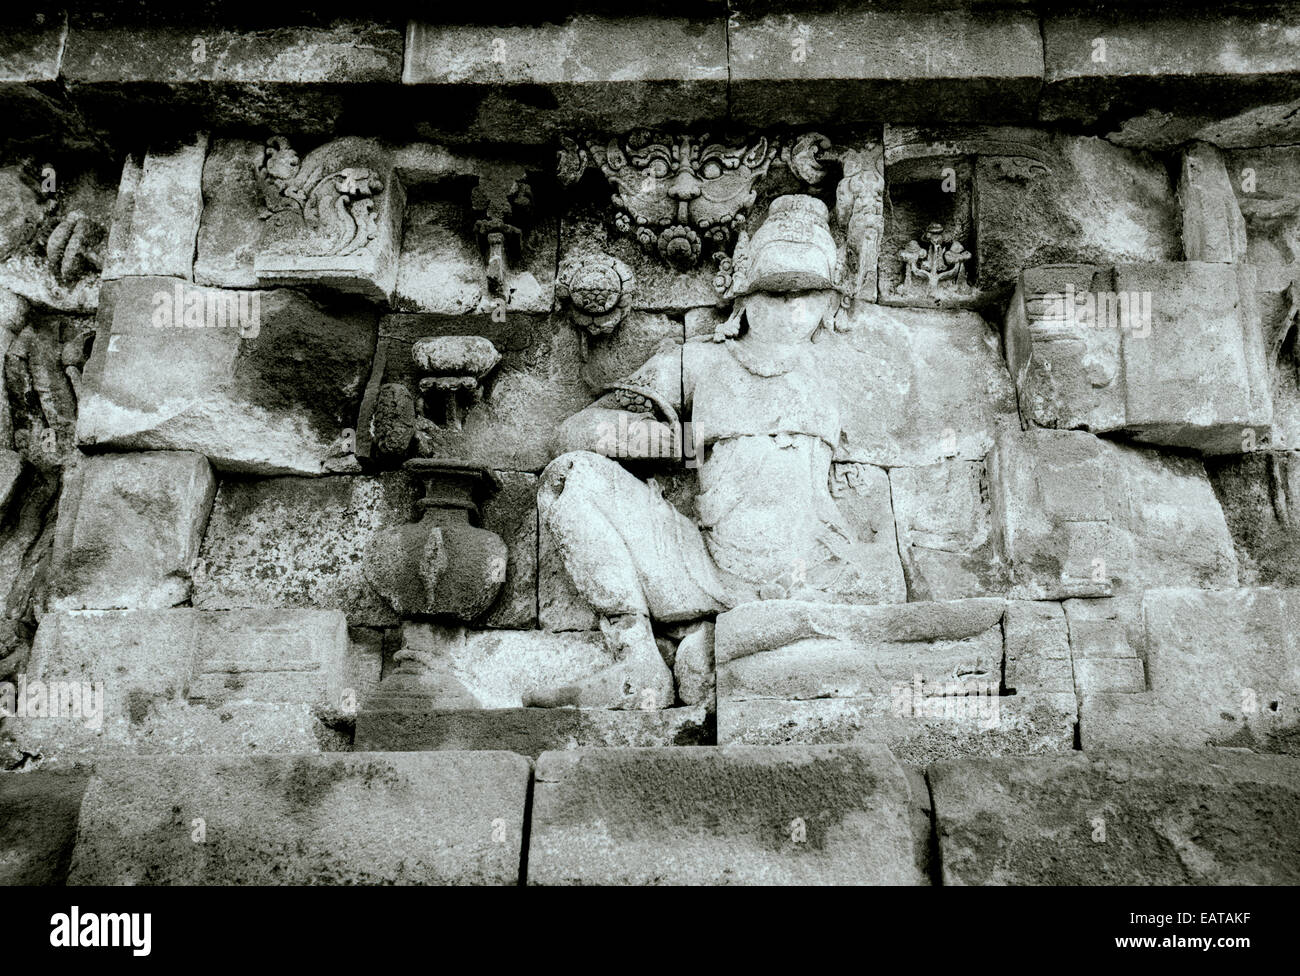 Reise Fotografie - Buddhistische Tempel Borobudur in Java in Indonesien in Südostasien im Fernen Osten. Buddhismus Geschichte Kunst schnitzen Relief Stockfoto